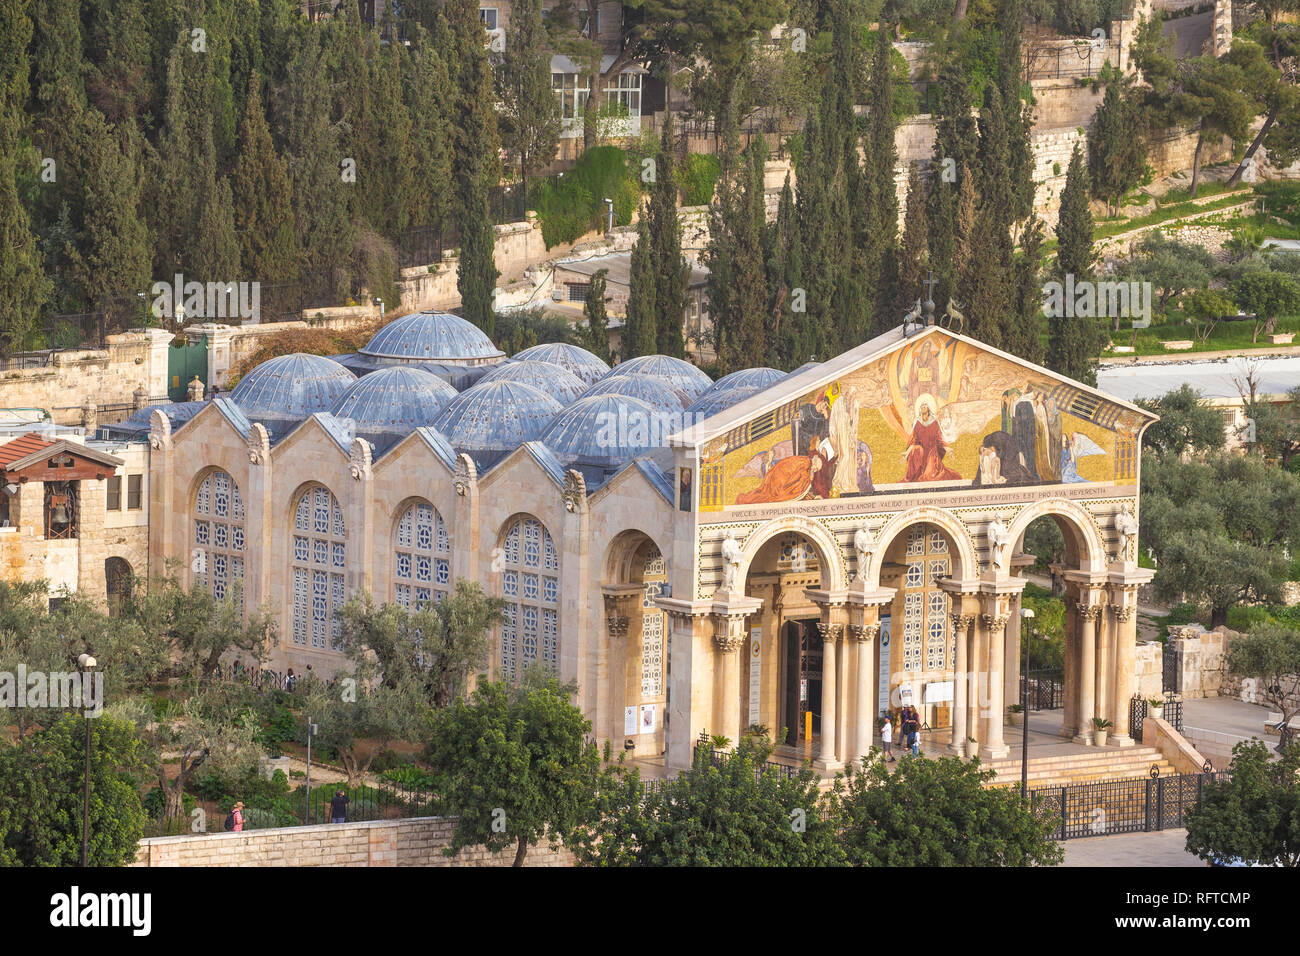 Kirche aller Nationen (Kirche der Agonie) (Basilika der Qualen), Ölberg, Jerusalem, Israel, Naher Osten Stockfoto